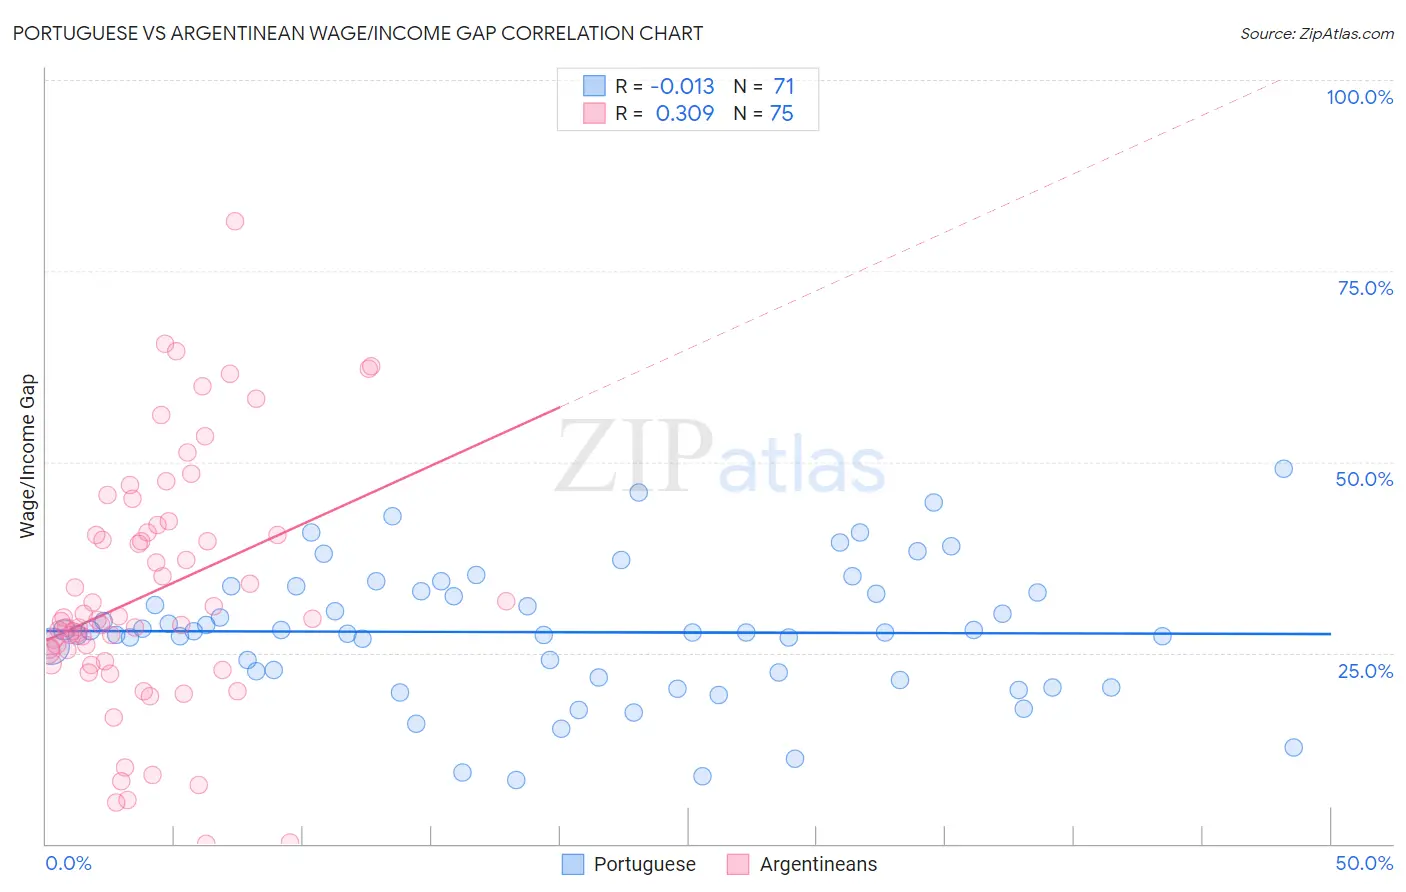 Portuguese vs Argentinean Wage/Income Gap